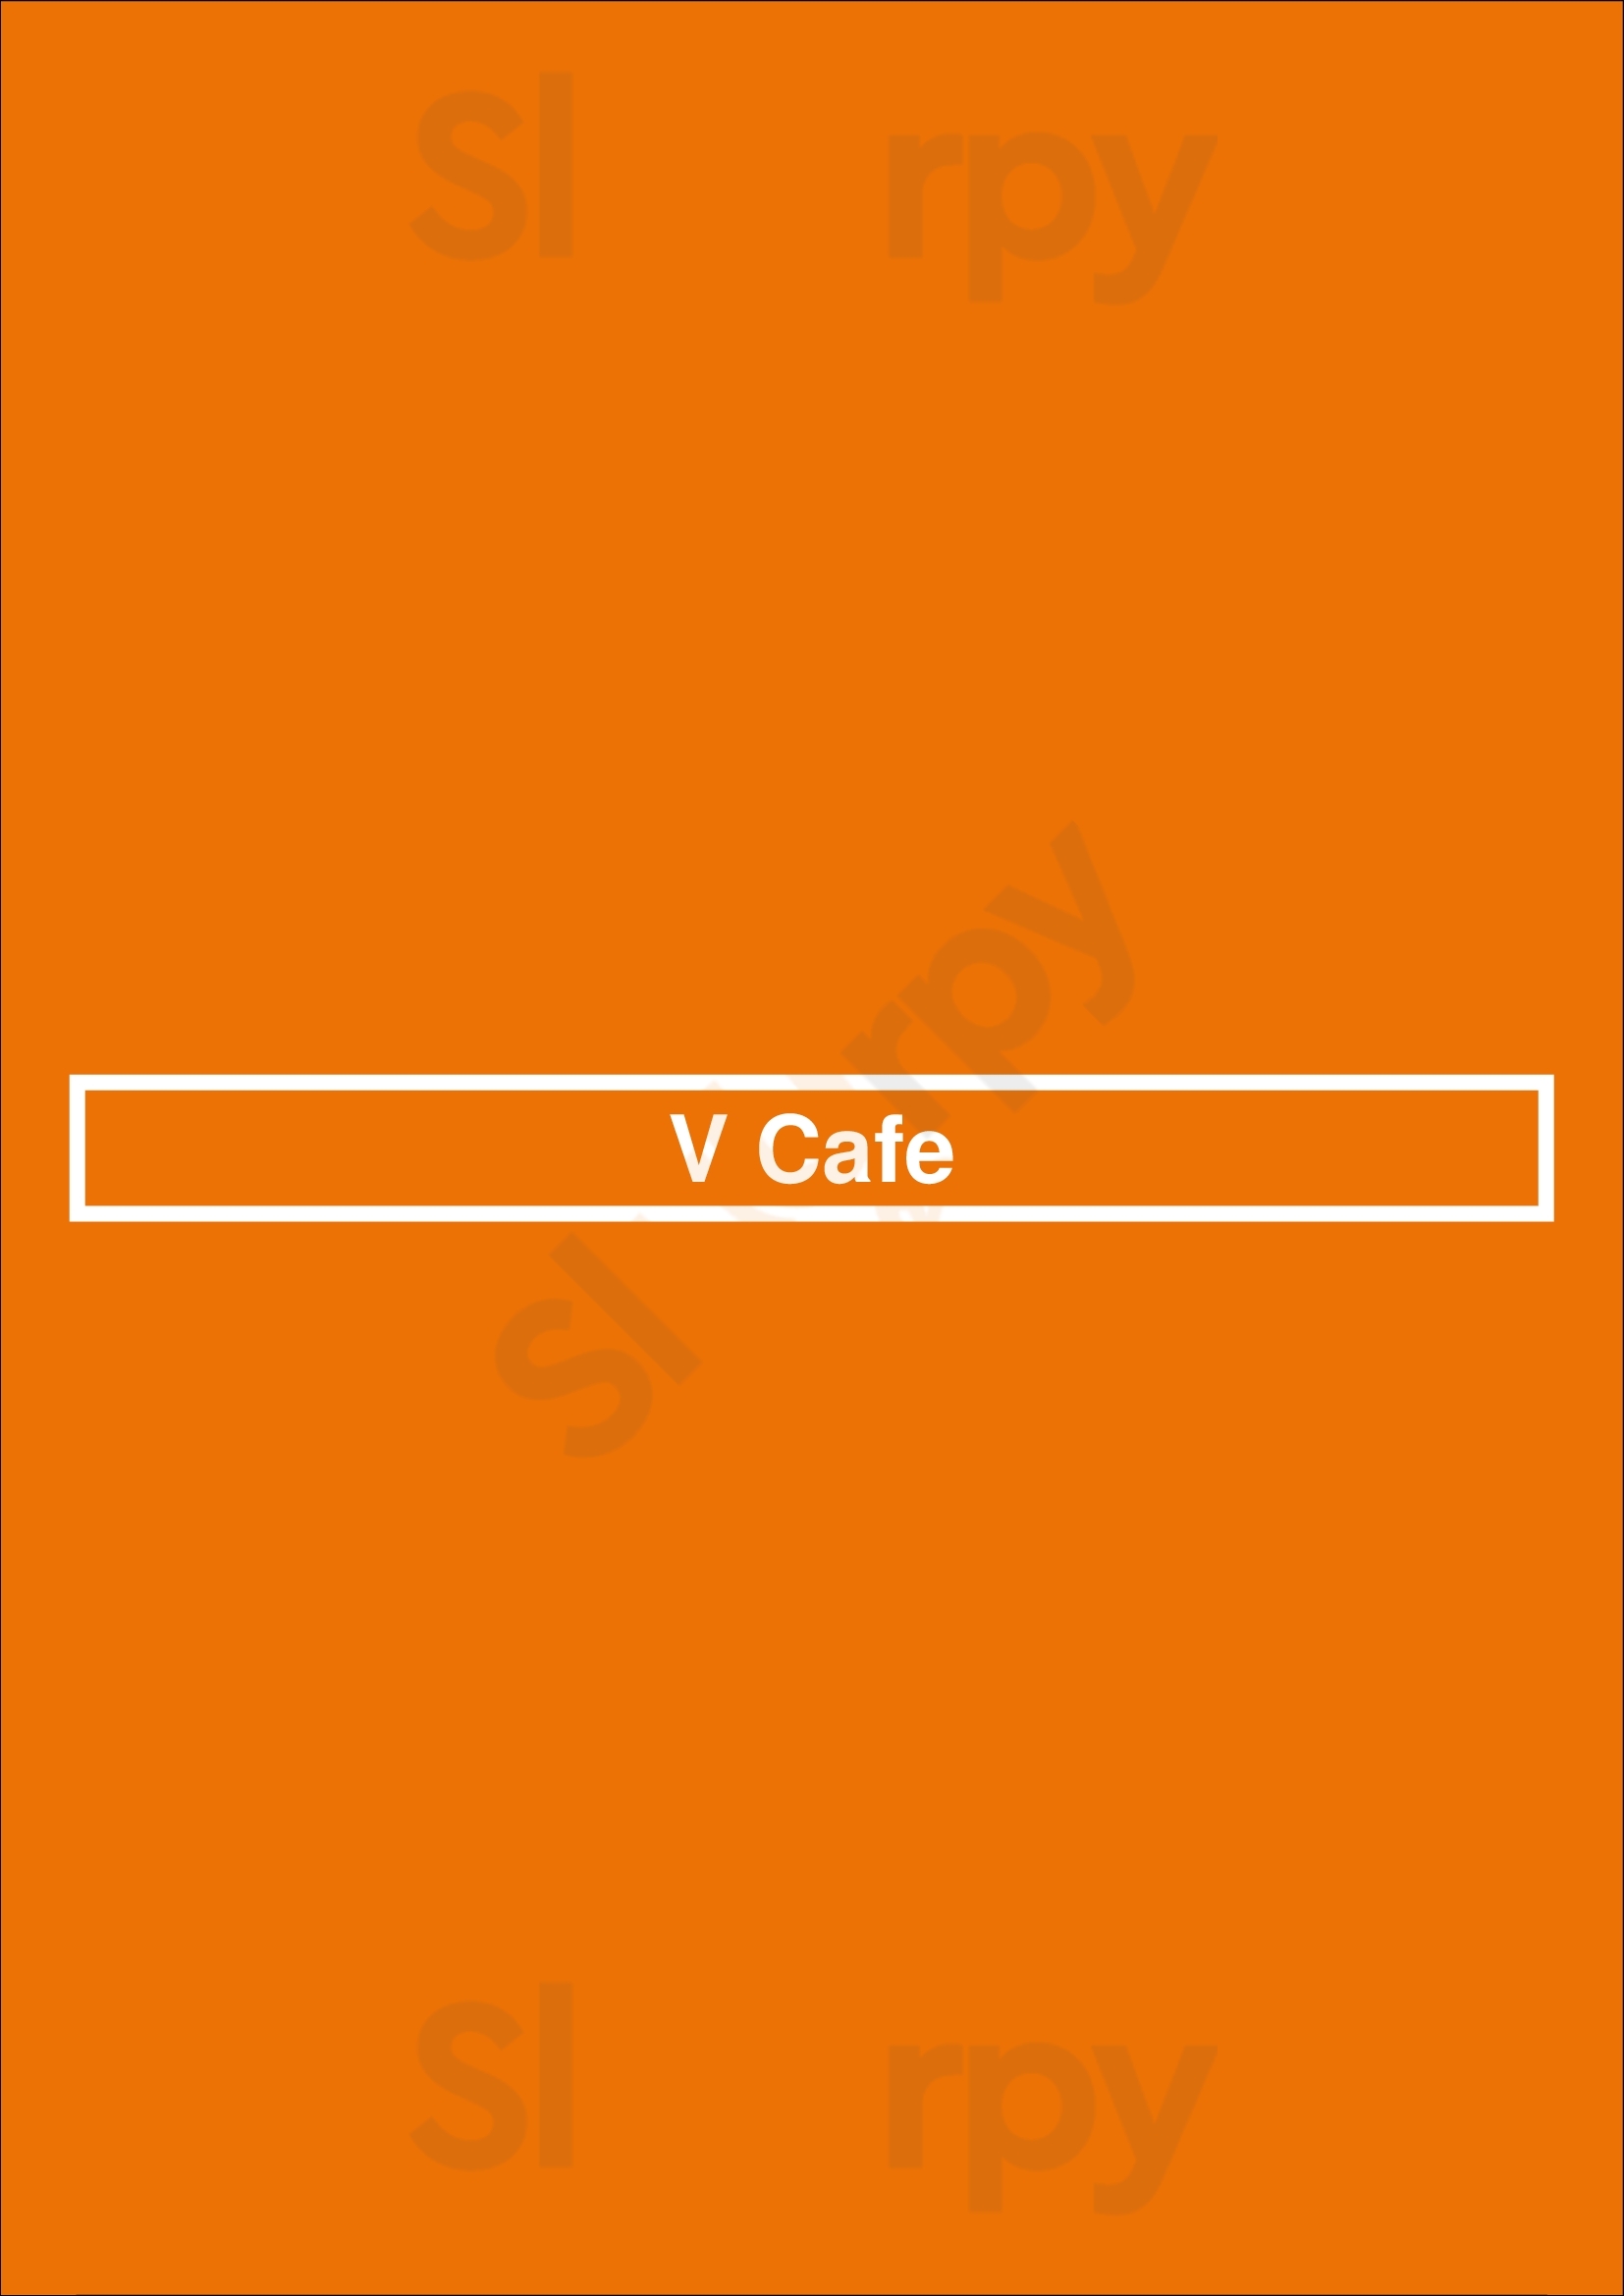 V Cafe New Westminster Menu - 1